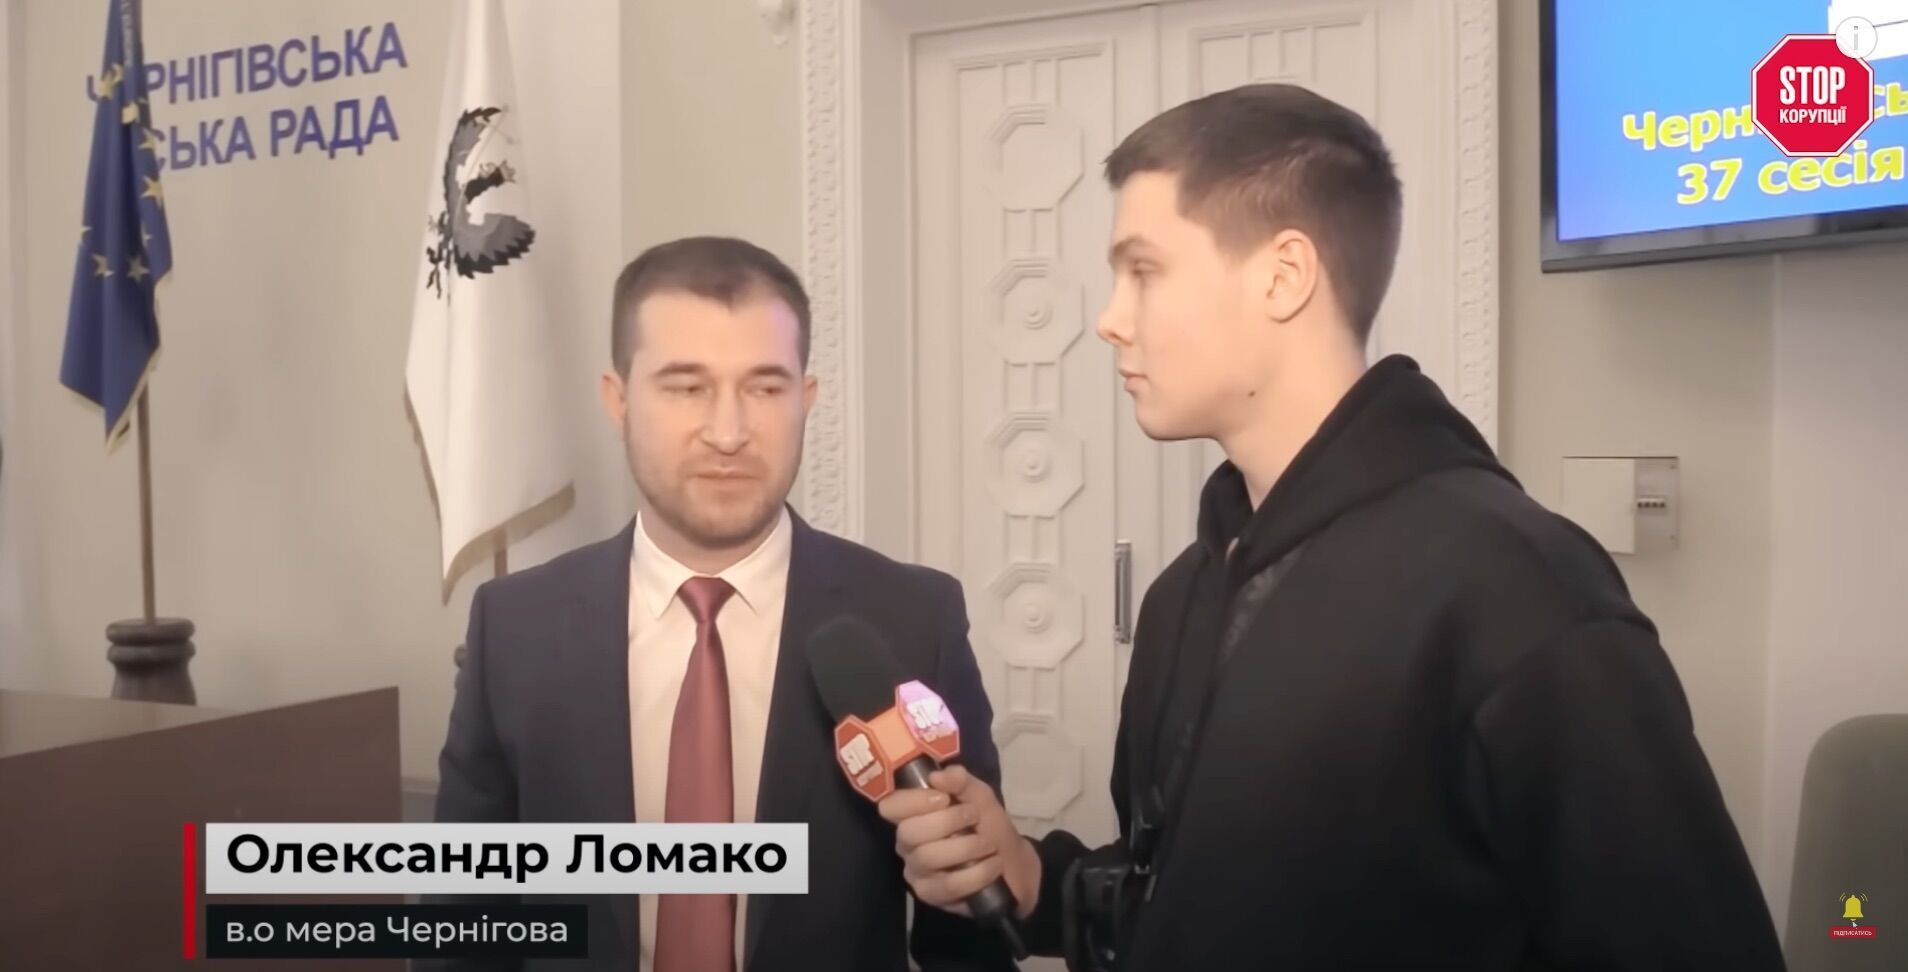 Журналісти спробували взяти коментар у в.о. мера Чернігова Олександра Ломако